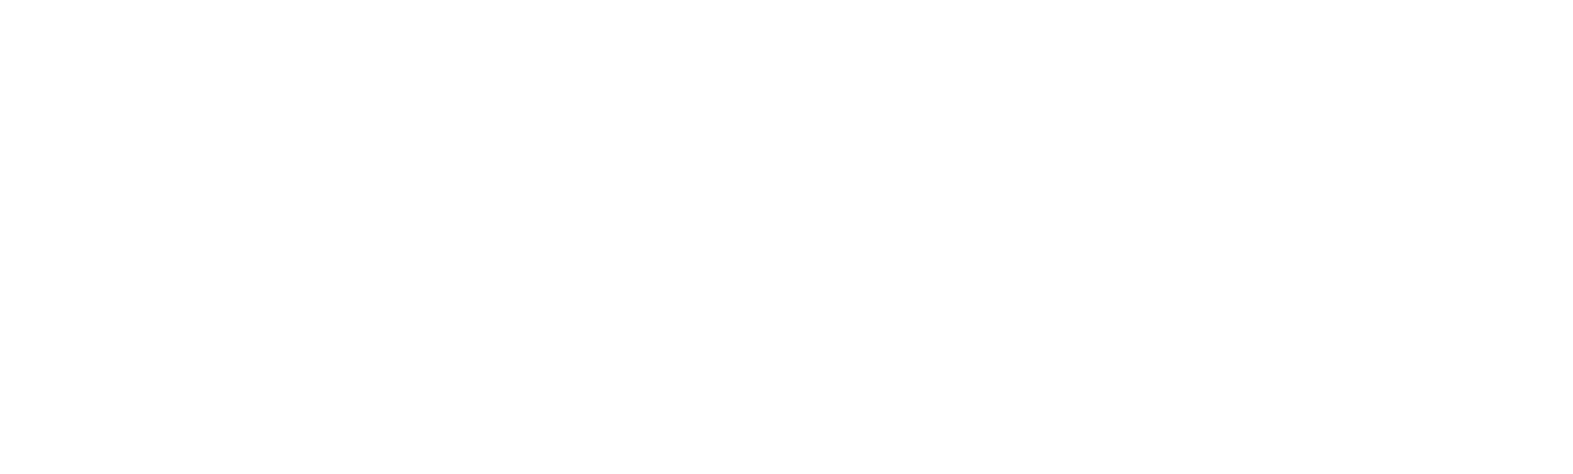 Lucid Motors logo for dark backgrounds (transparent PNG)